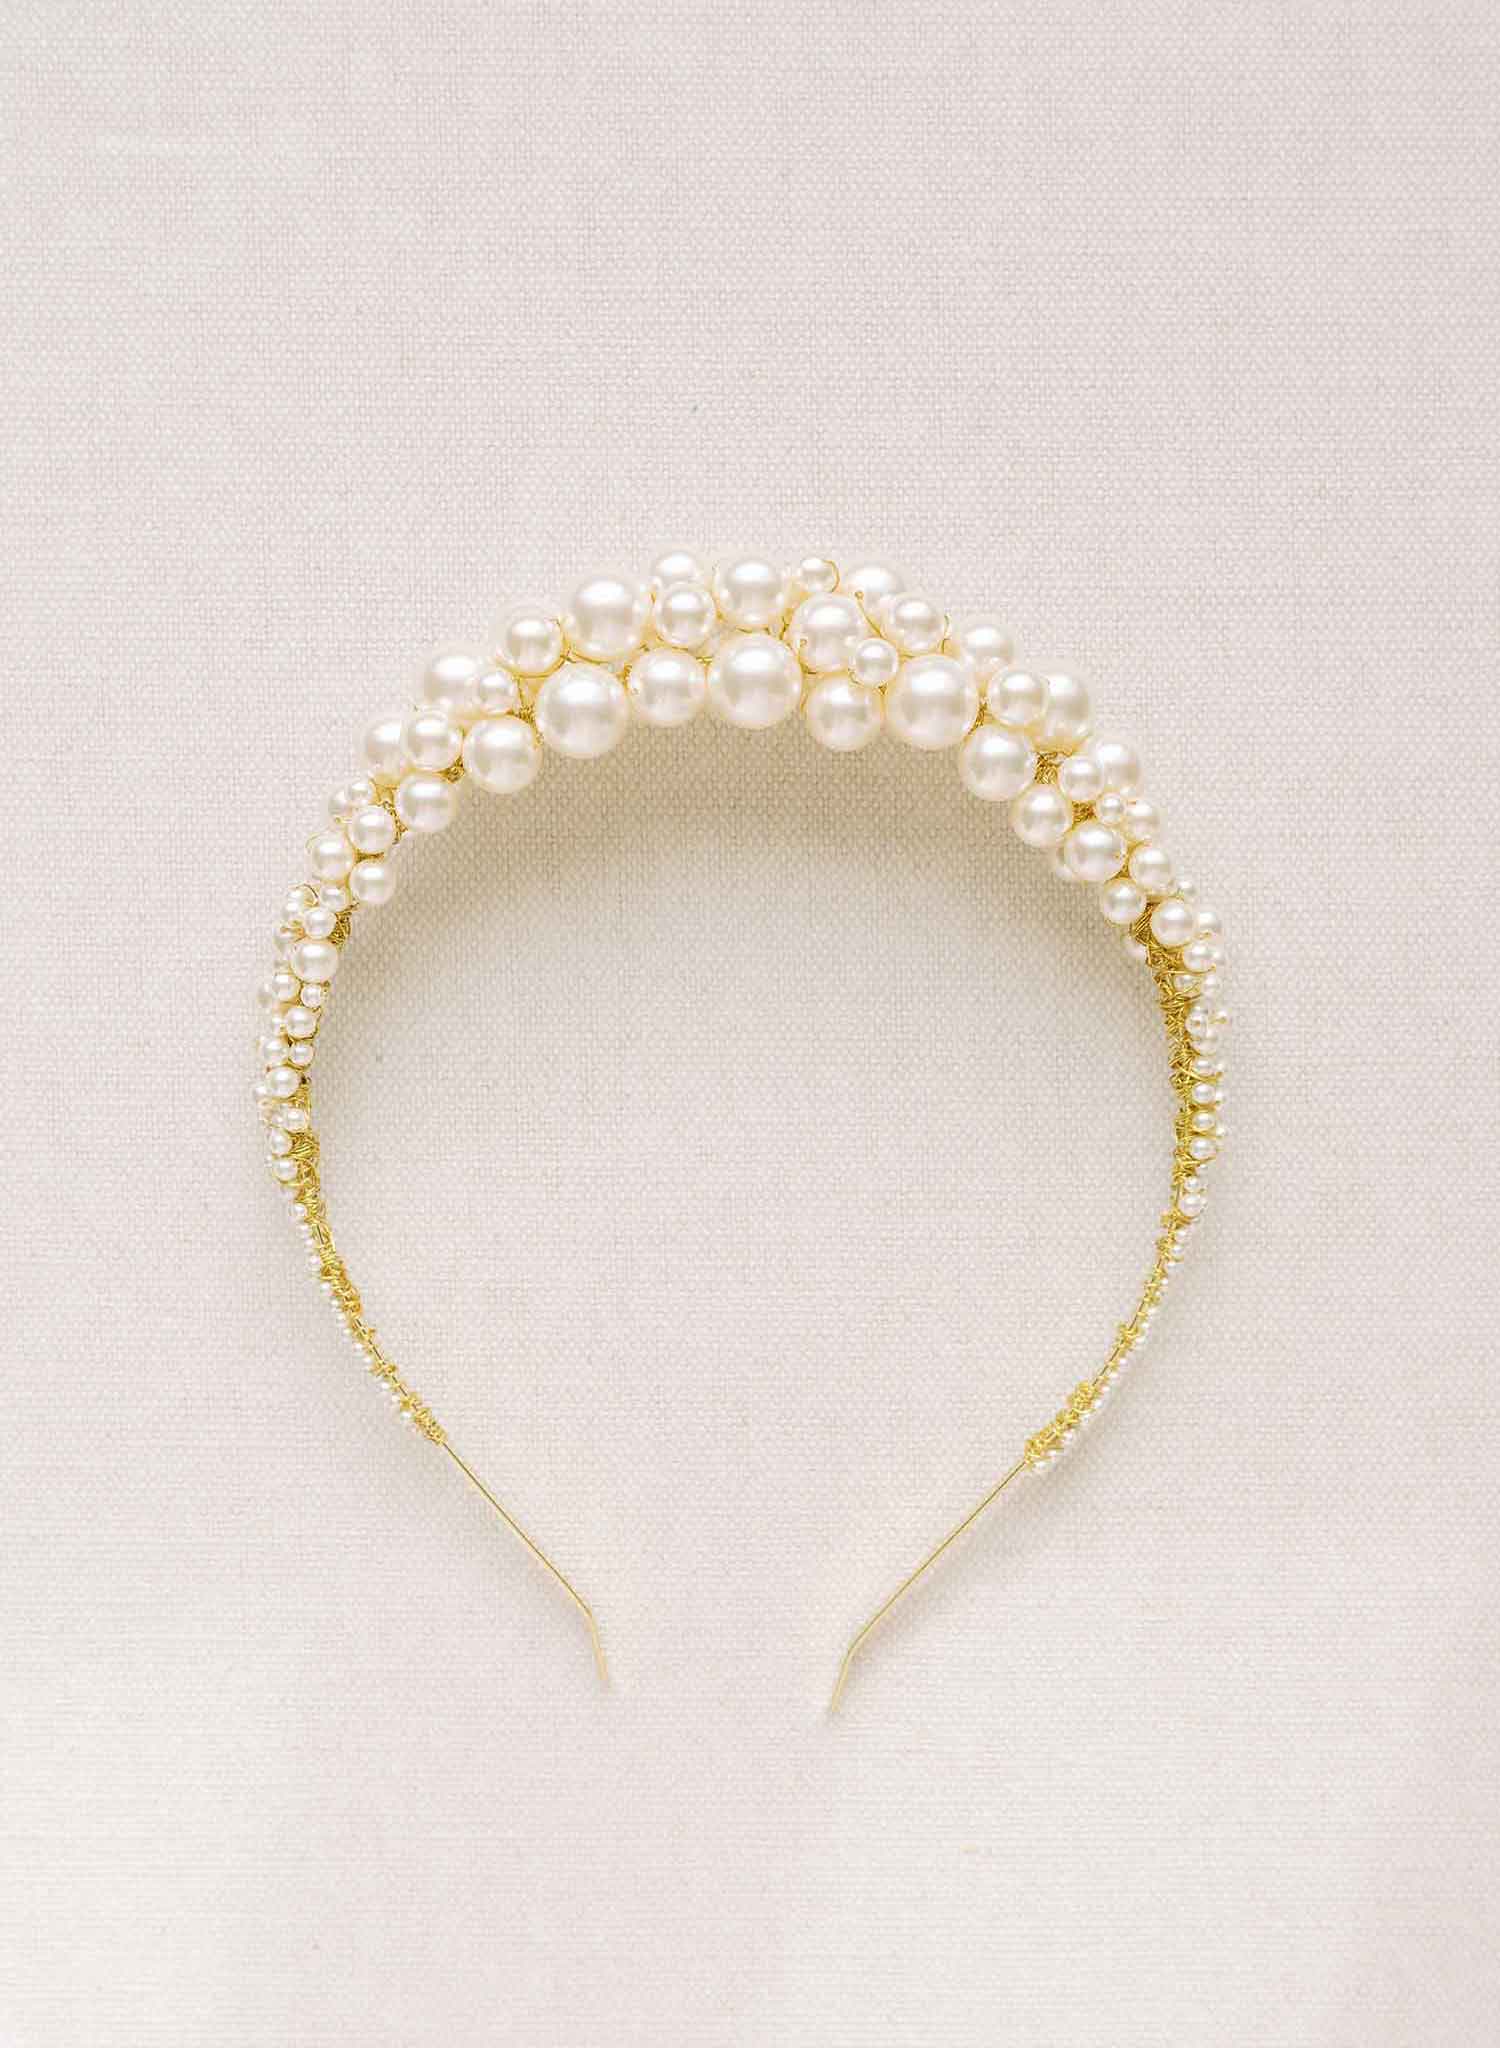 Venus pearl headband - Style #21303